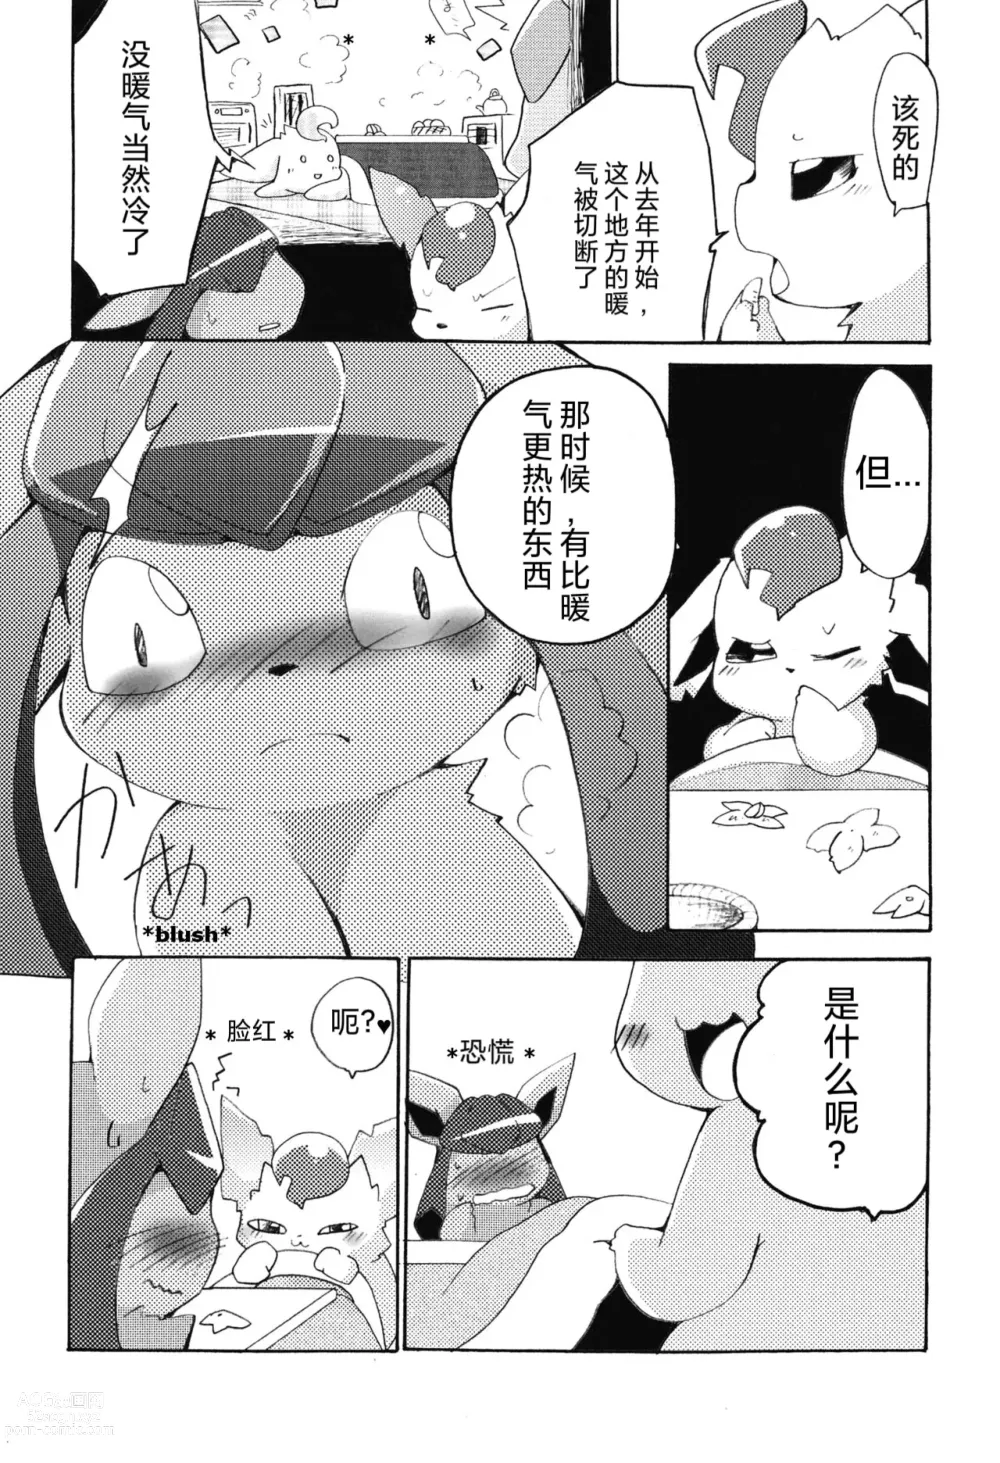 Page 9 of doujinshi Motto Atsui no wa Suki?